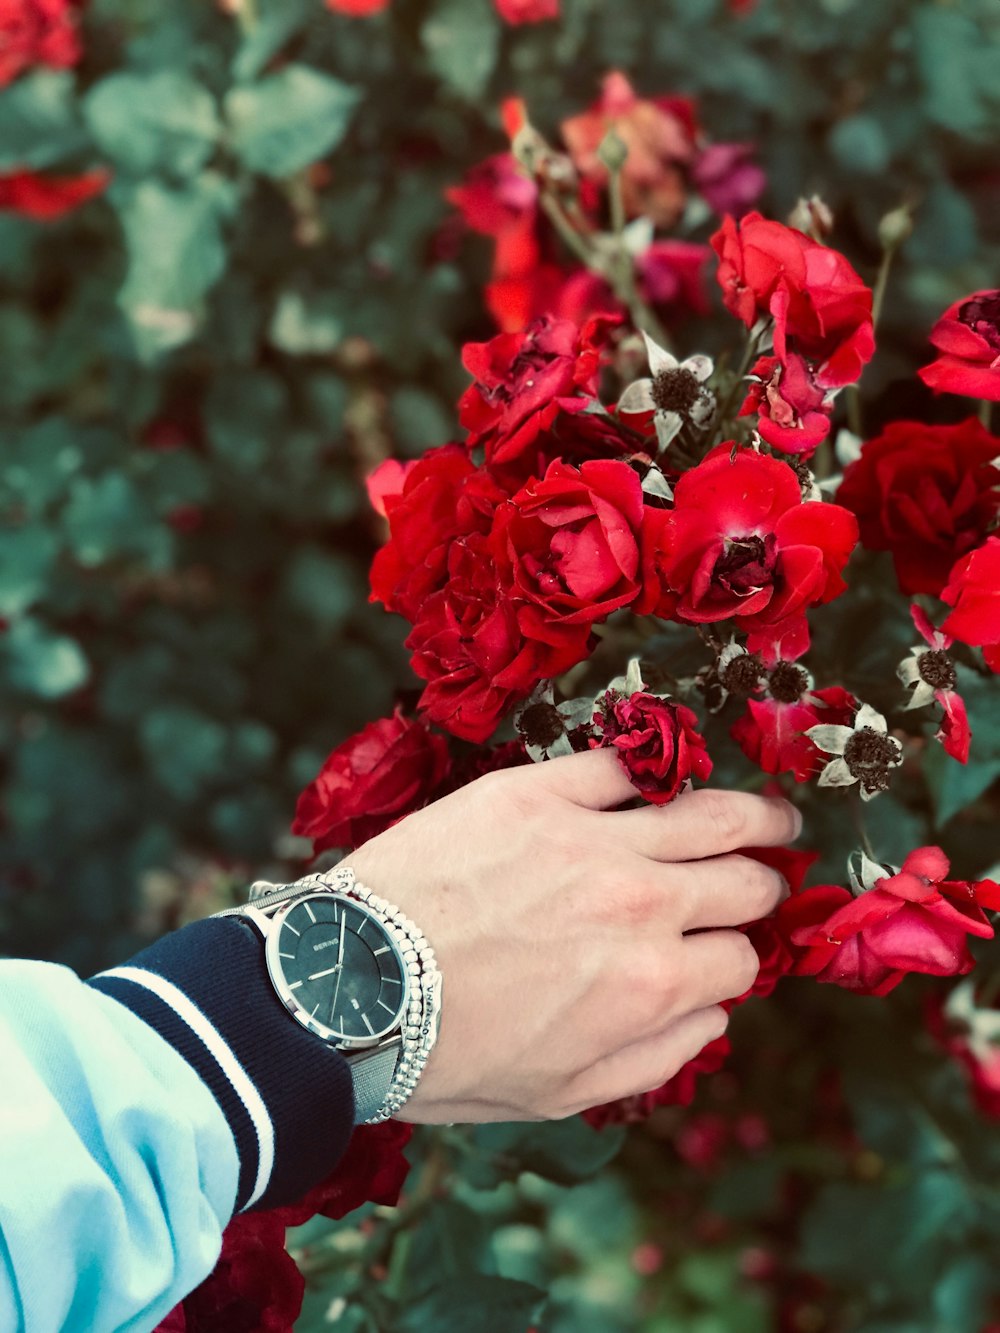 赤い花びらを持つ時計を身に着けている人